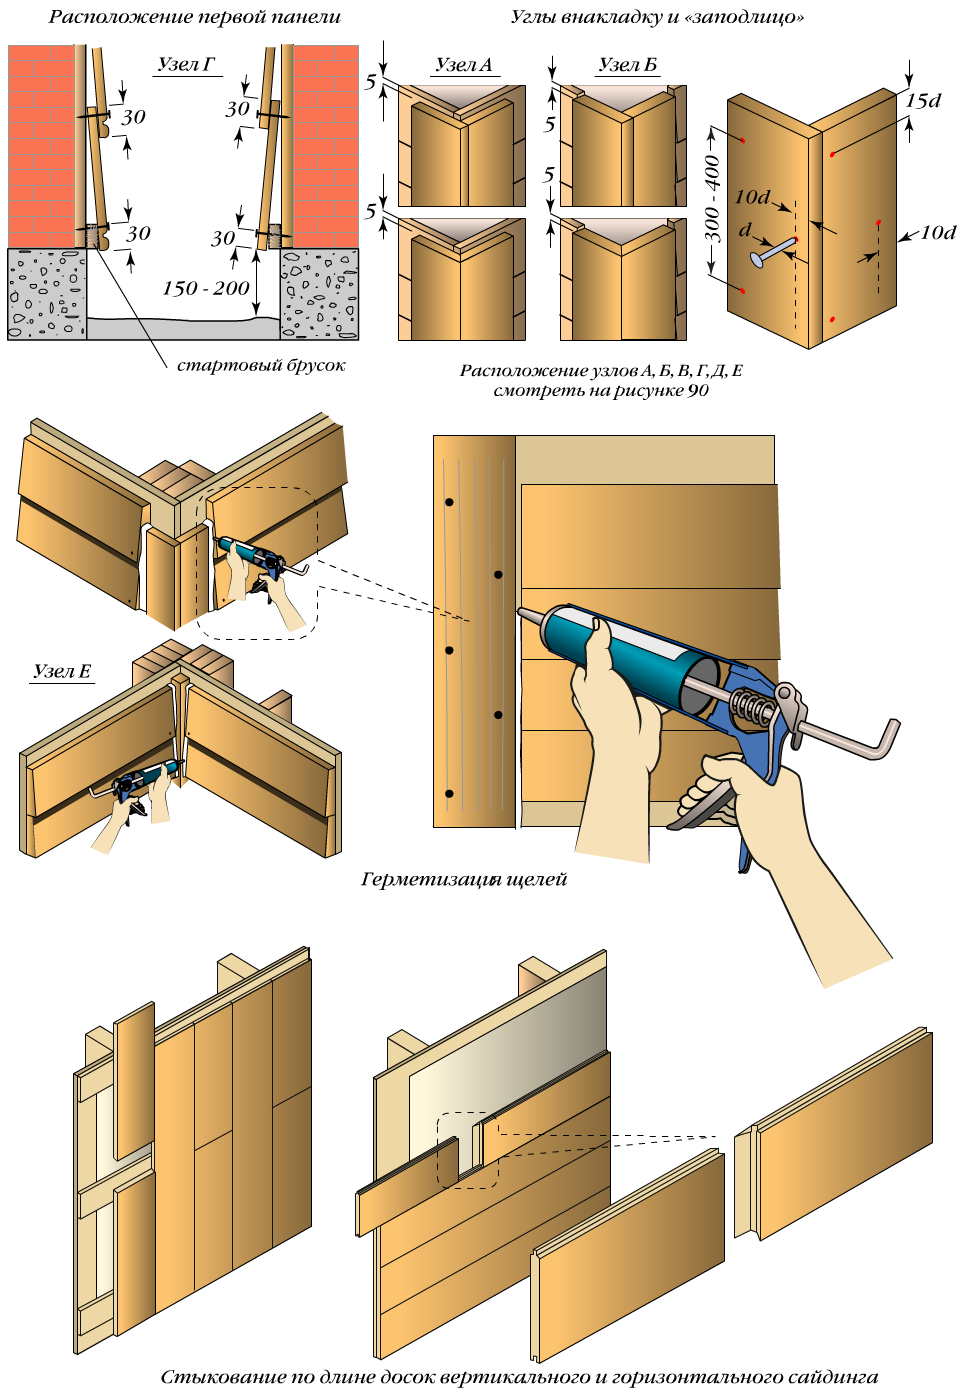 Виниловый блок-хаус под бревно для наружной отделки дома: виды, технические характеристики и технология монтажа